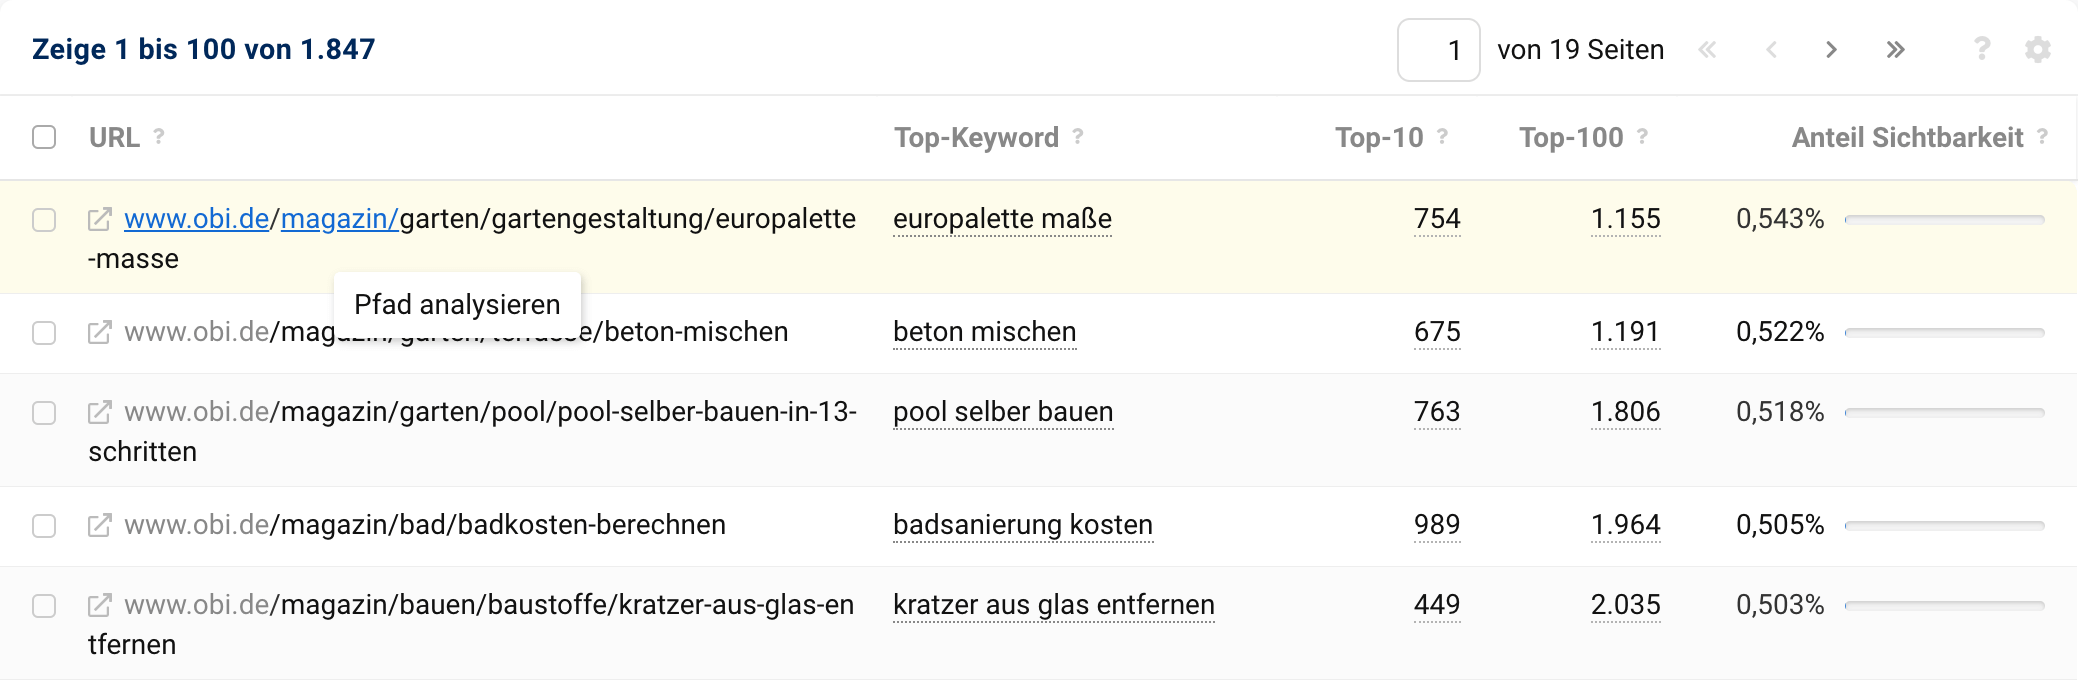 Ansicht der URL-Tabelle für die Domain obi.de. Der Mauszeiger steht über dem /magazin/-Verzeichnis einer URL und mit einem Klick kann nur dieses Verzeichnis ausgewertet werden.